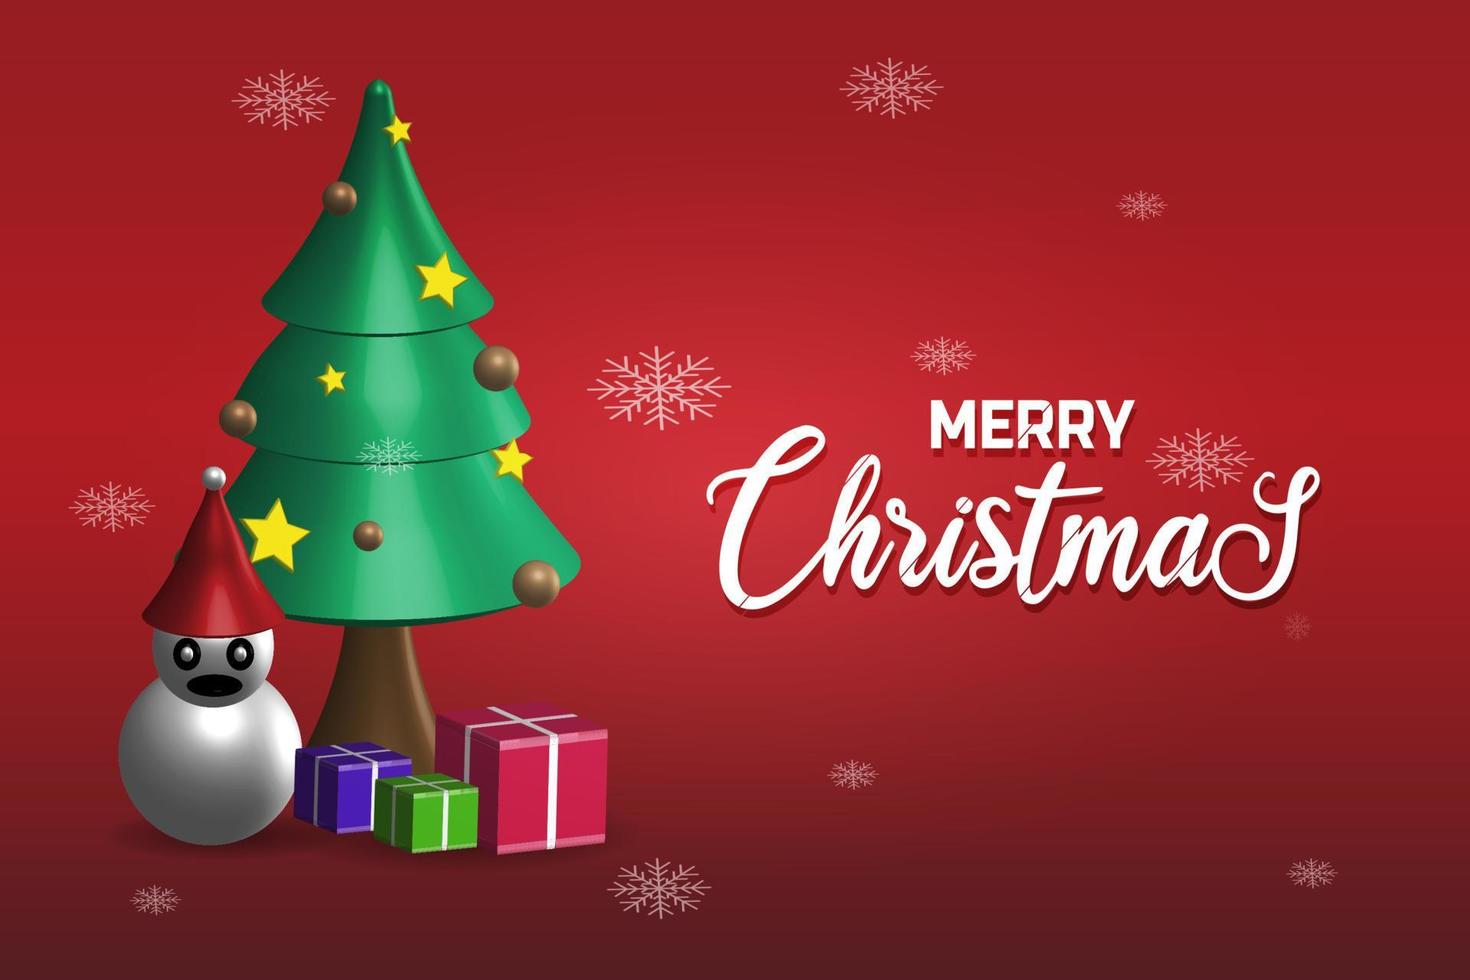 joyeux Noël. arbre de noël vert avec décoration ornée, bonhomme de neige, boîte-cadeau et chutes de neige, fond rouge, vecteur 3d réaliste décoratif